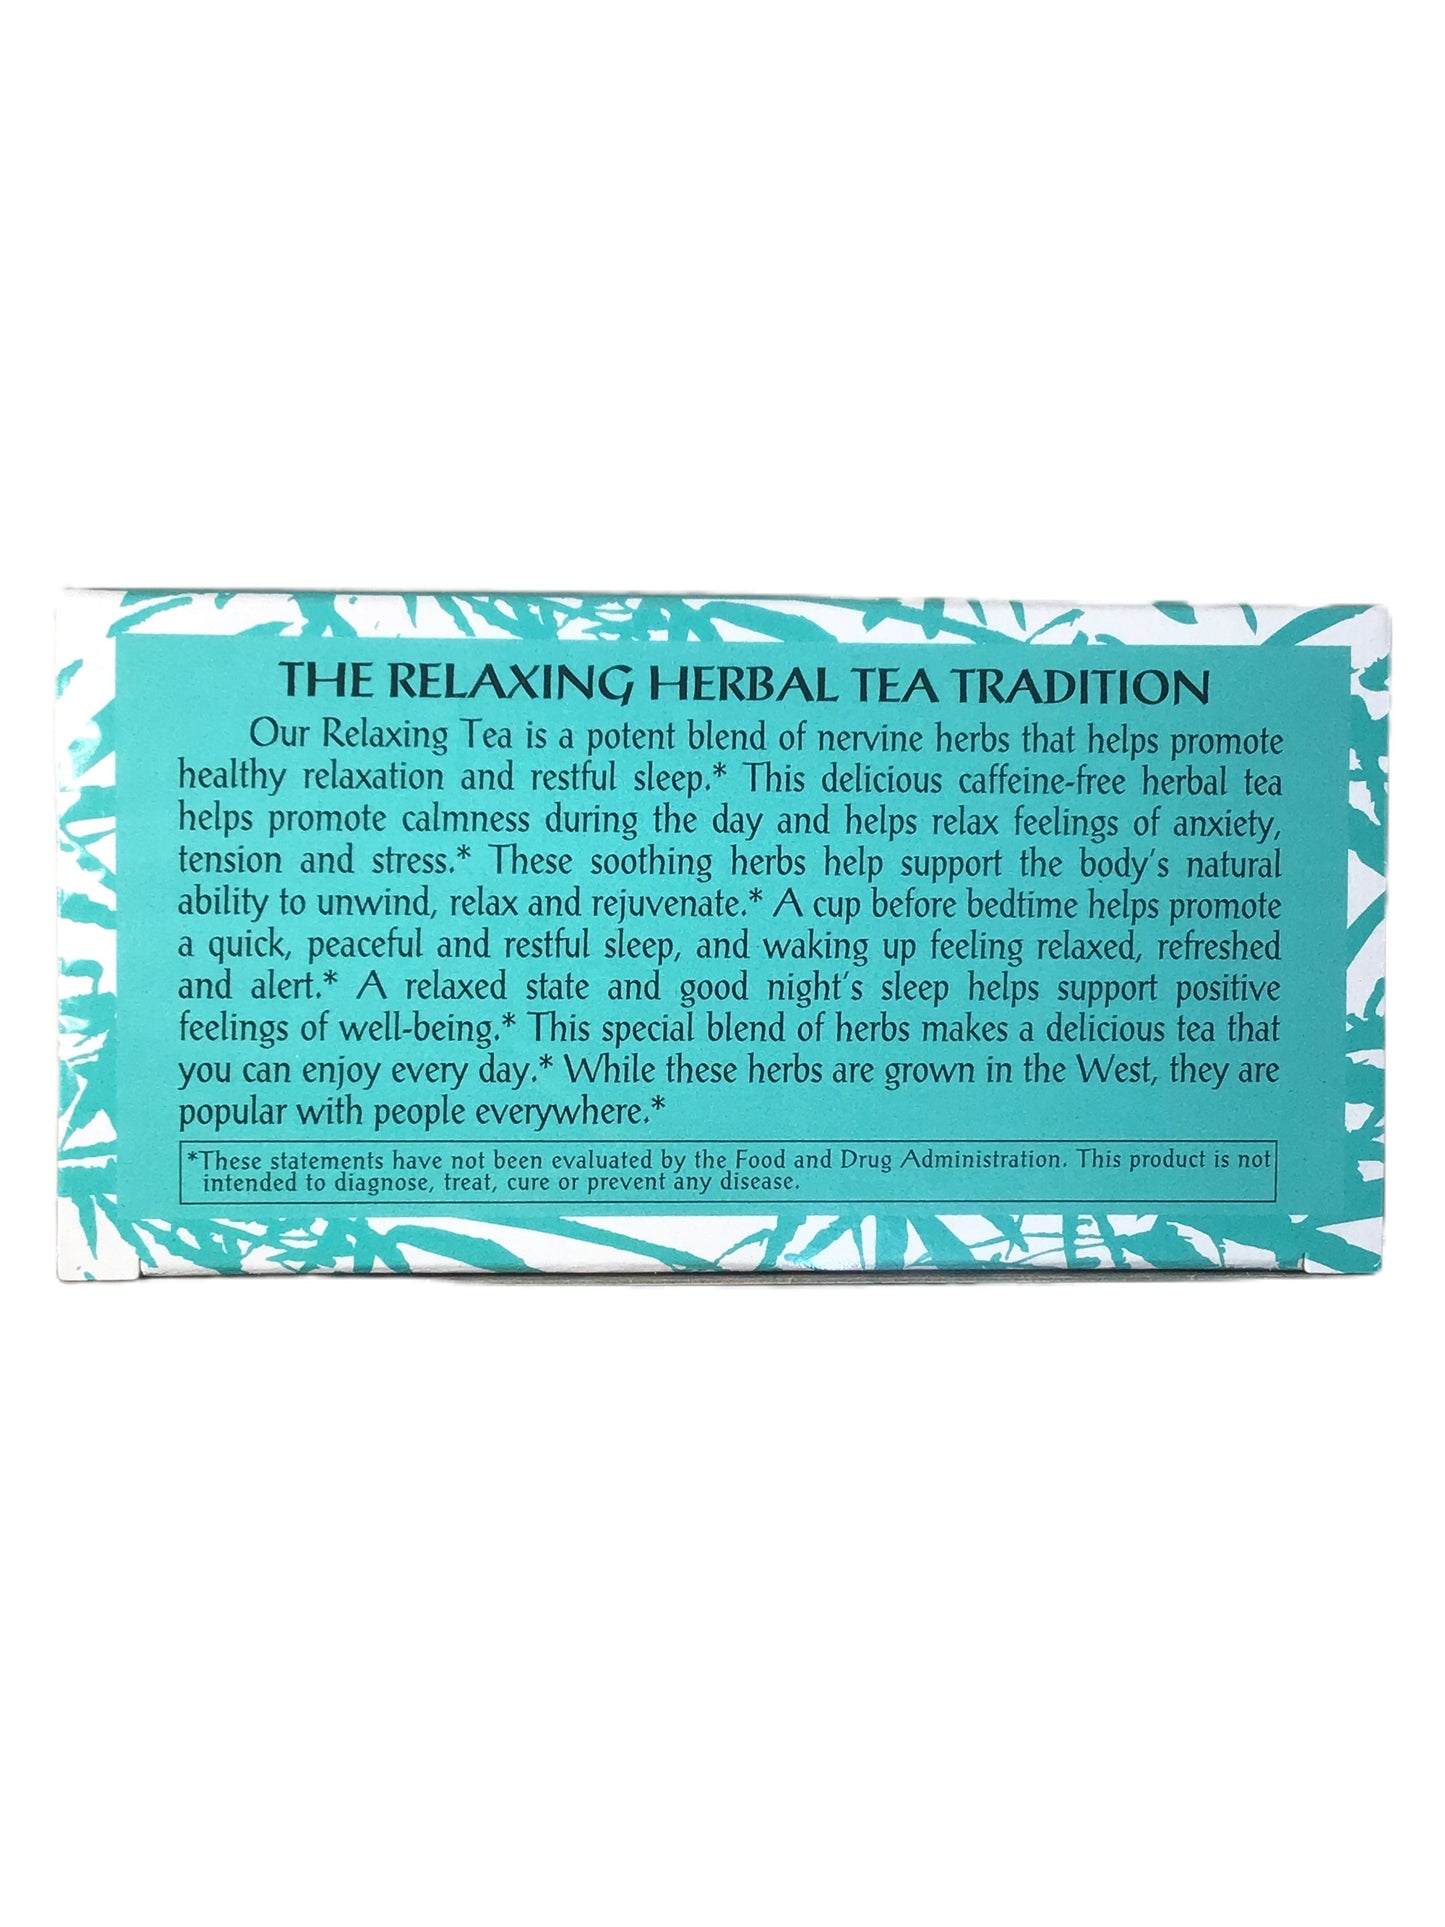 Triple Leaf Brand Herbal Tea - Relaxing Tea 宁神茶